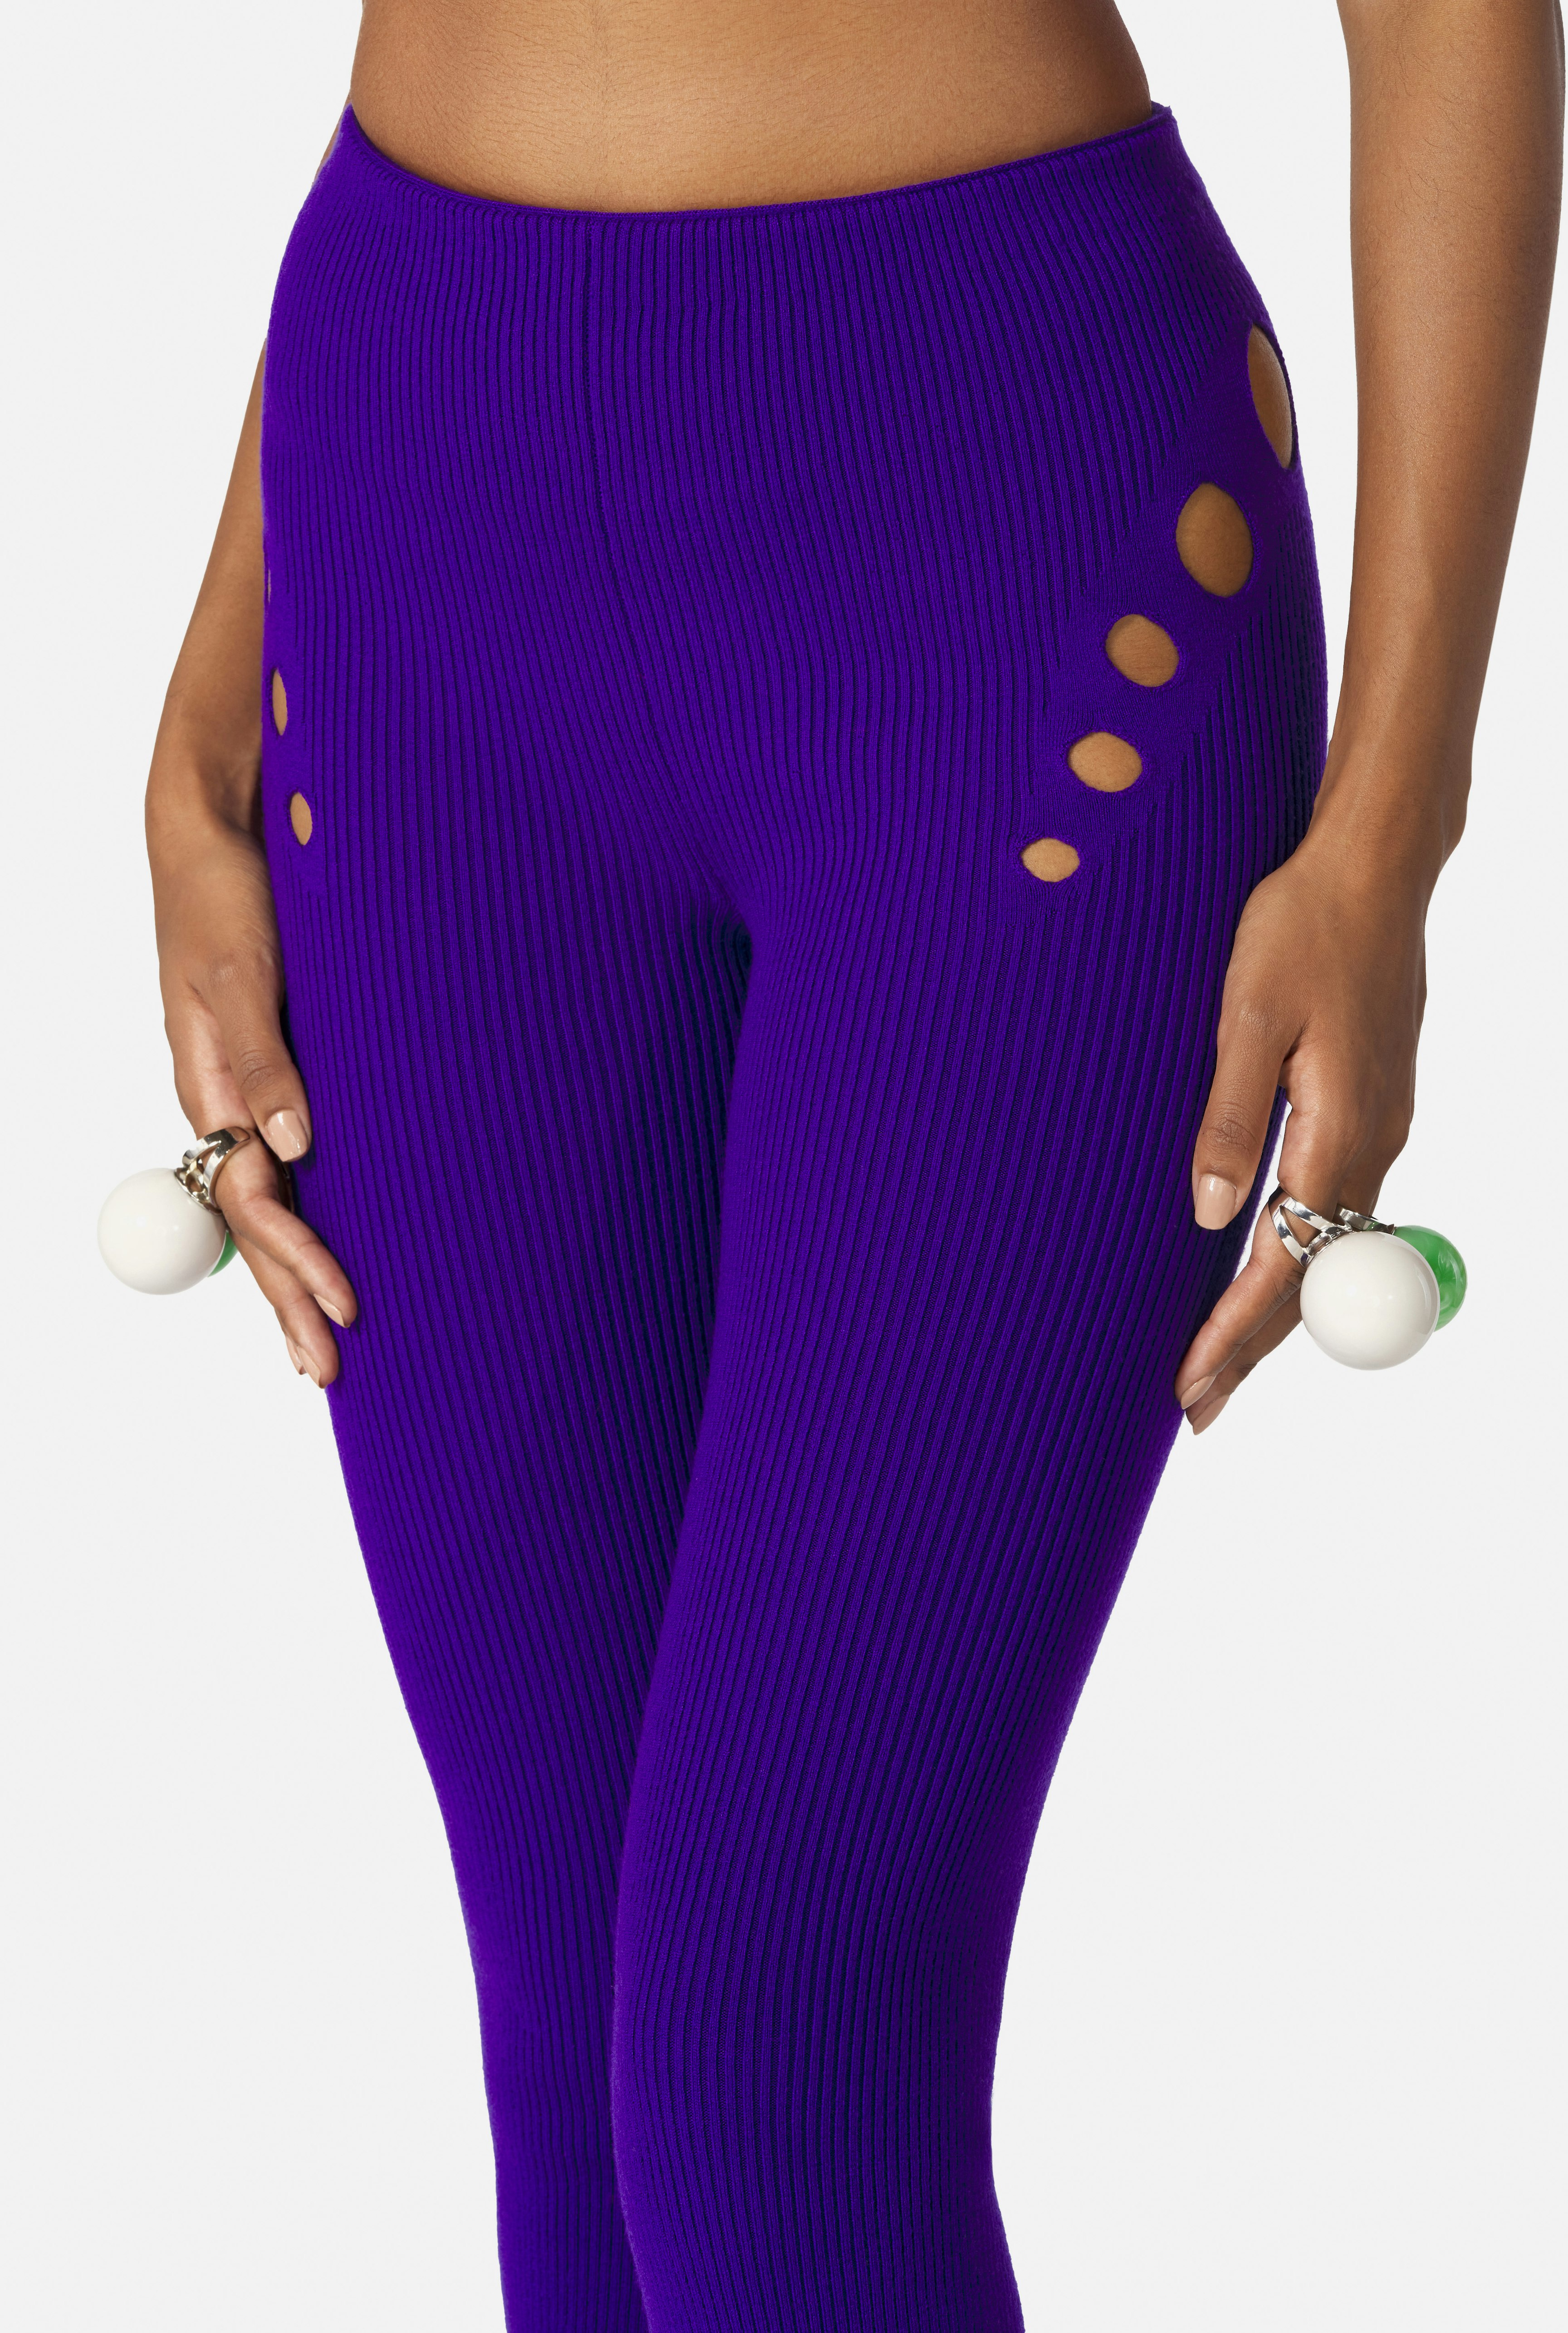 The Purple Openworked Knit Pants Jean Paul Gaultier